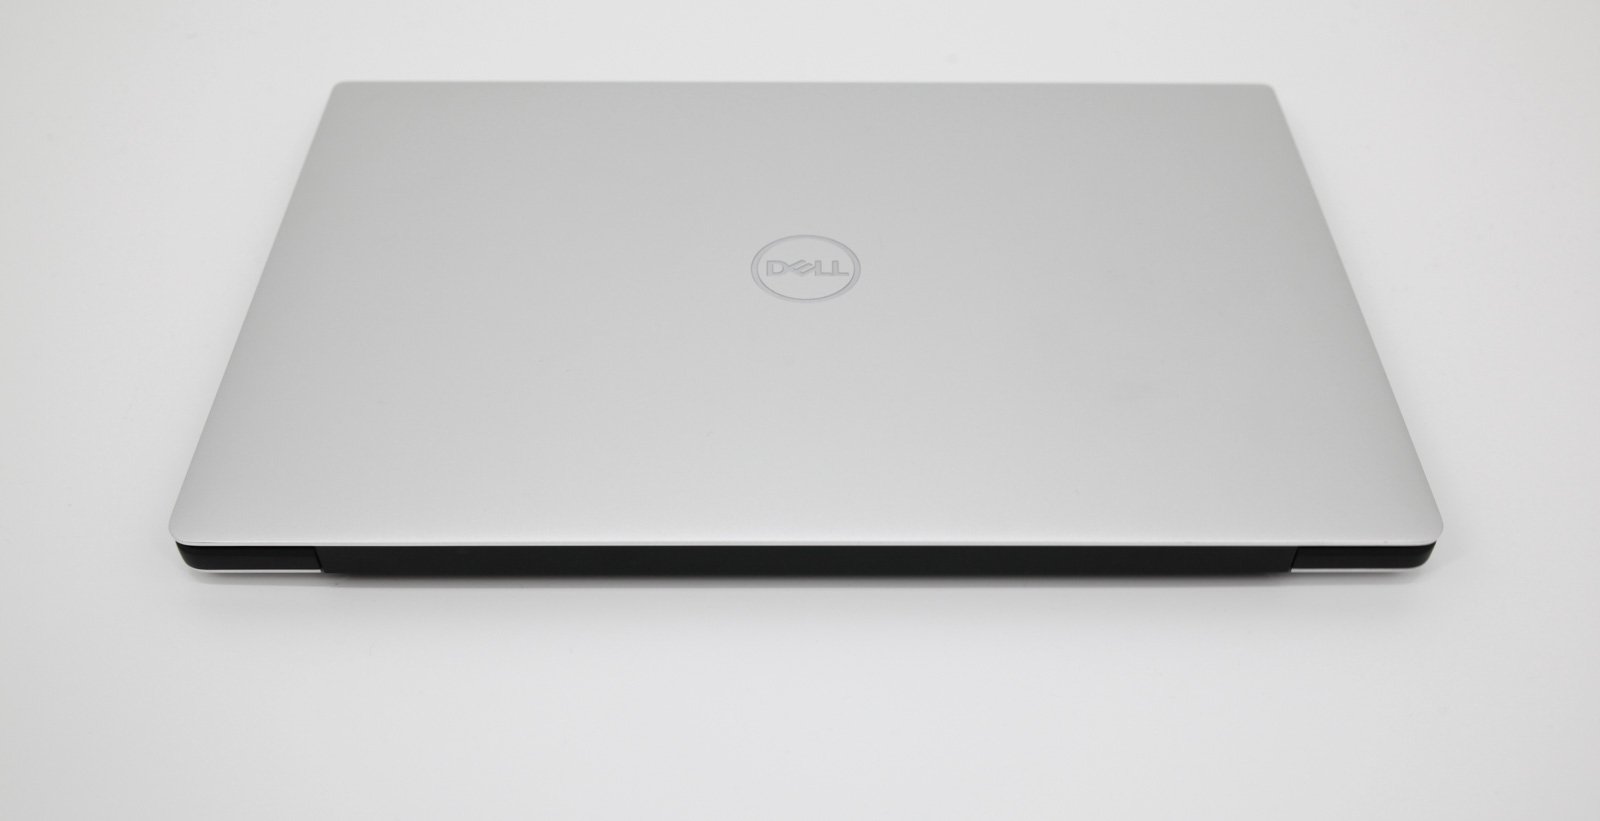 Dell XPS 13 9380 4K Touch Laptop: Core i7 8th Gen, 512GB SSD, 16GB RAM, Warranty - CruiseTech